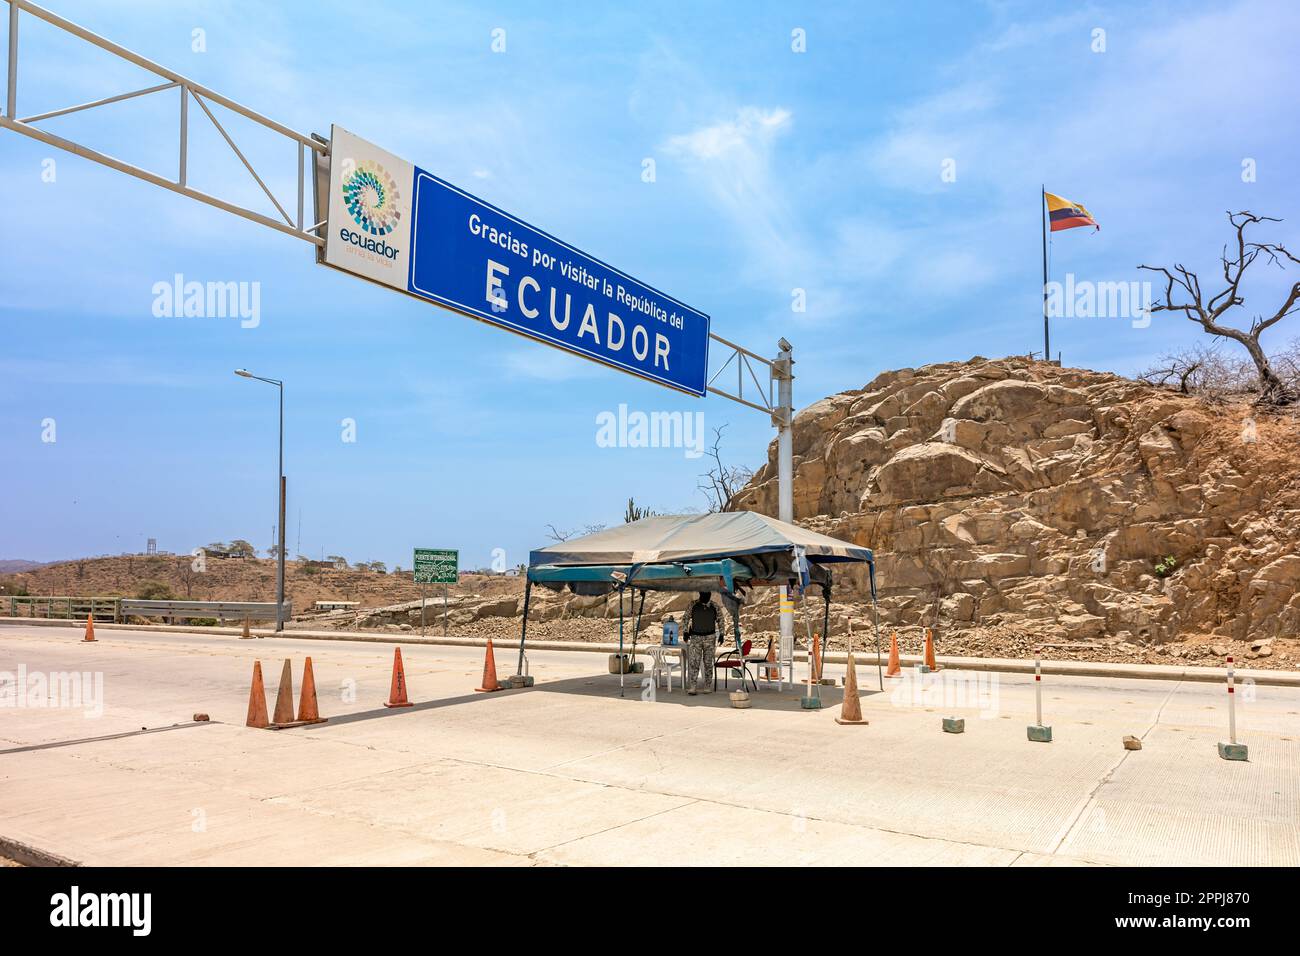 Ecuador - September 22, 2022: border crossing to Ecuador Stock Photo